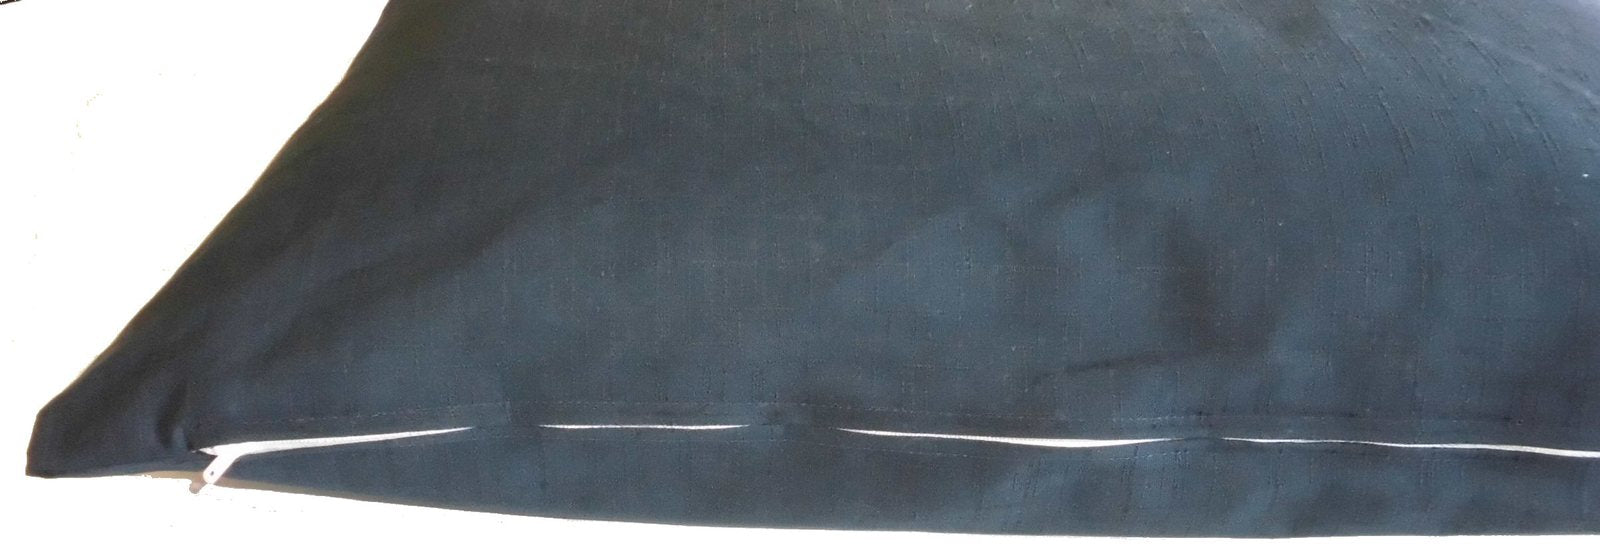 日本製座布団カバー 55×59cmつむぎ調無地綿100%zw55（ネイビー）